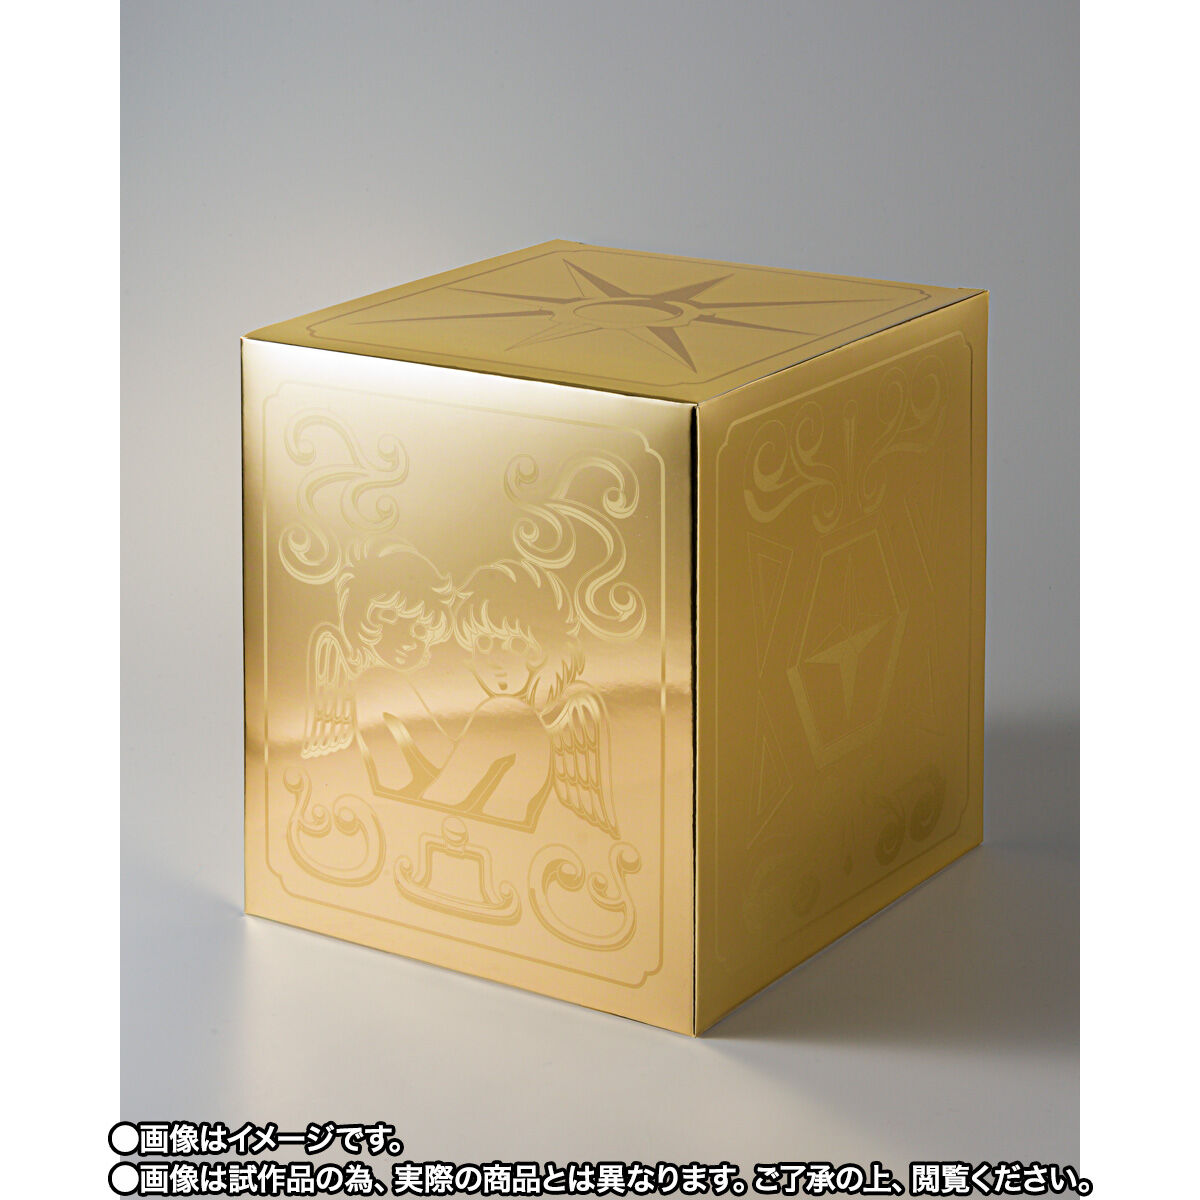 聖闘士聖衣神話EXシリーズ10周年 ジェミニサガ GOLD24フィギュア